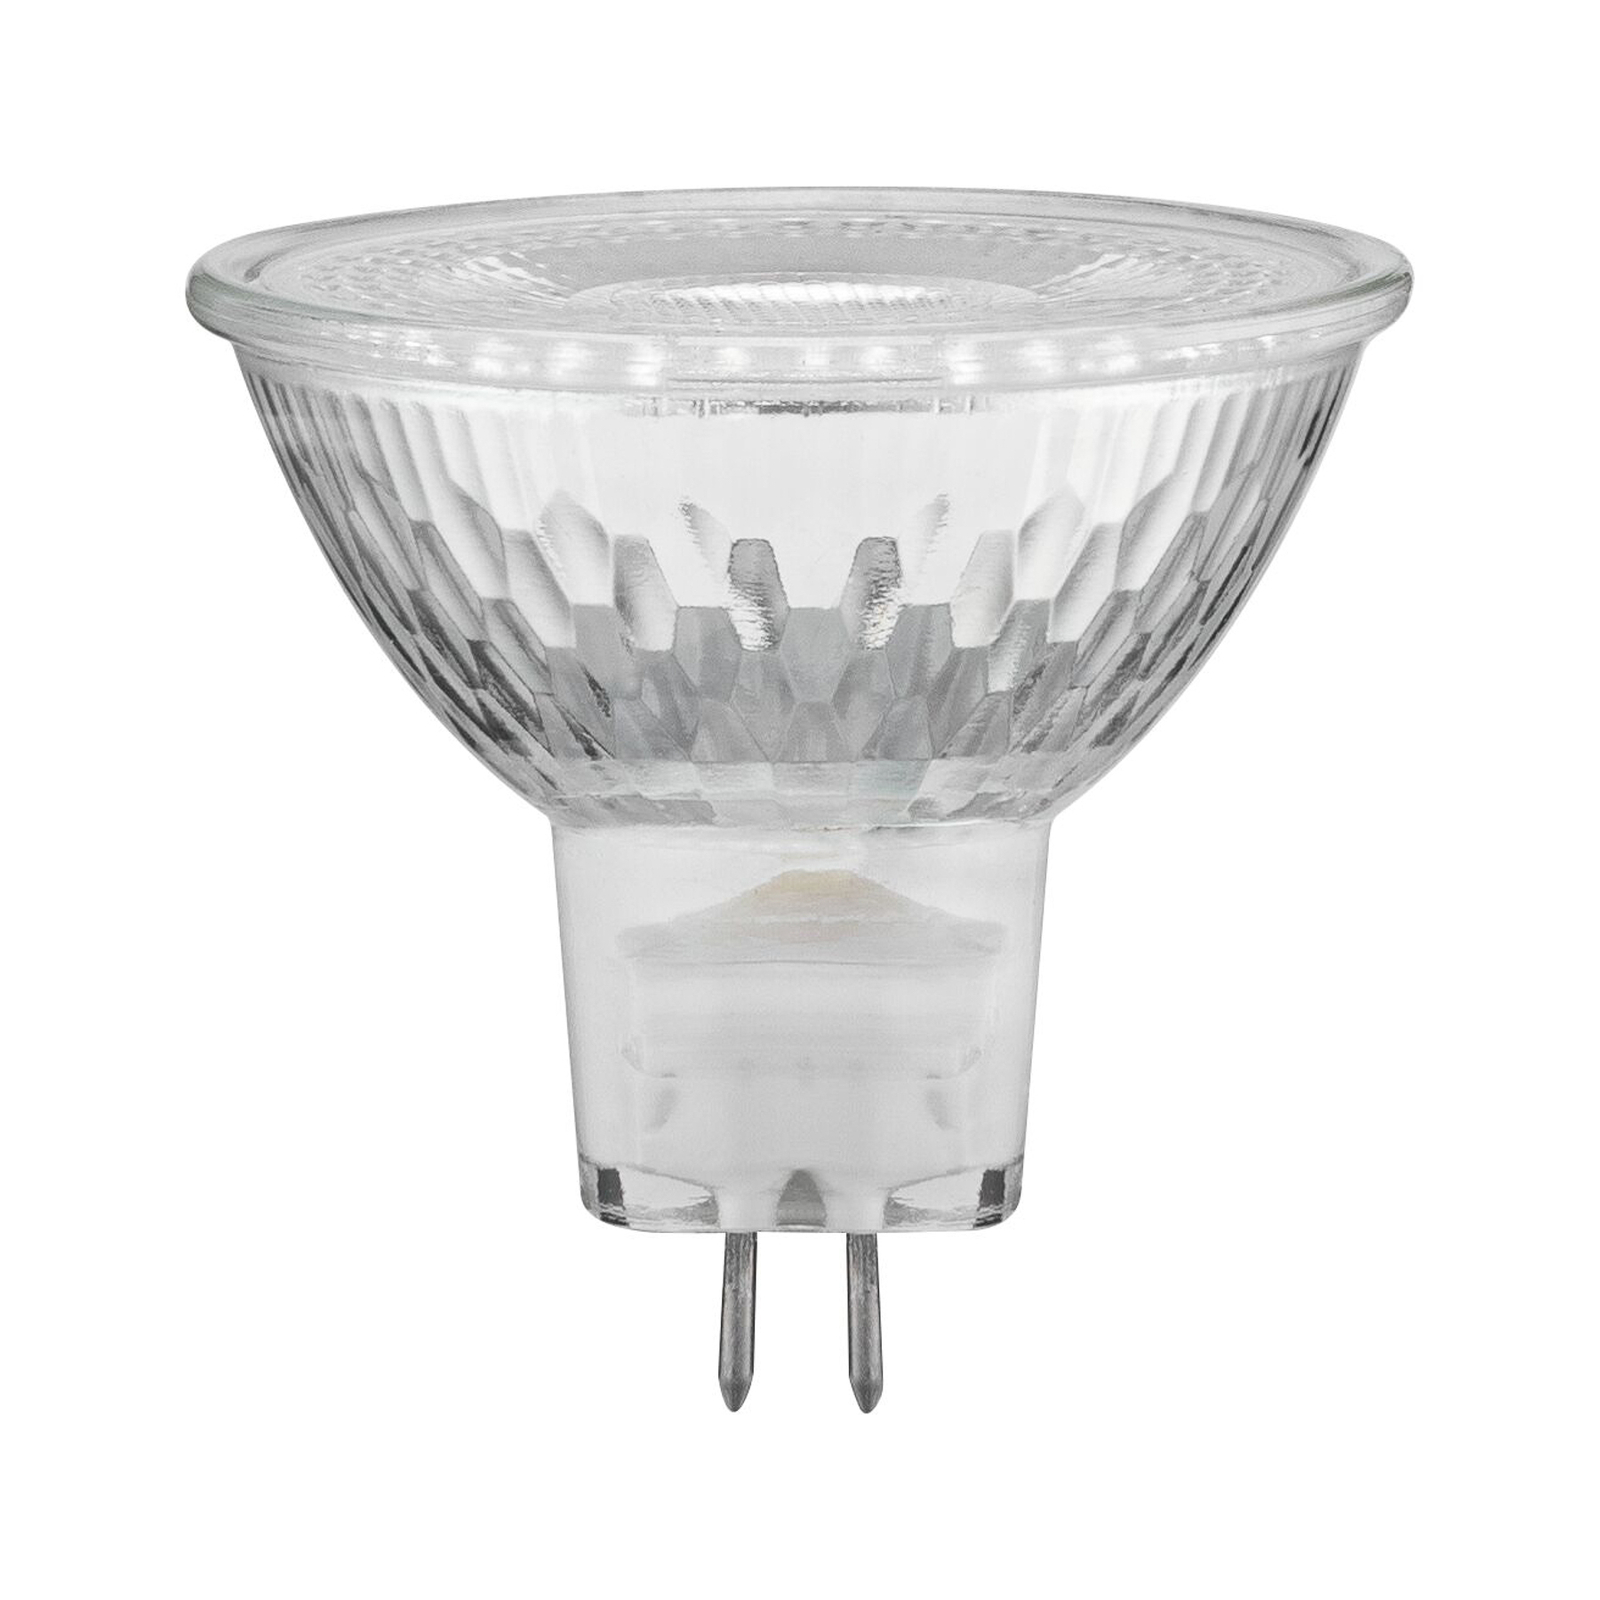 Paulmann Juwel reflector LED bulb GU5.3 3 W